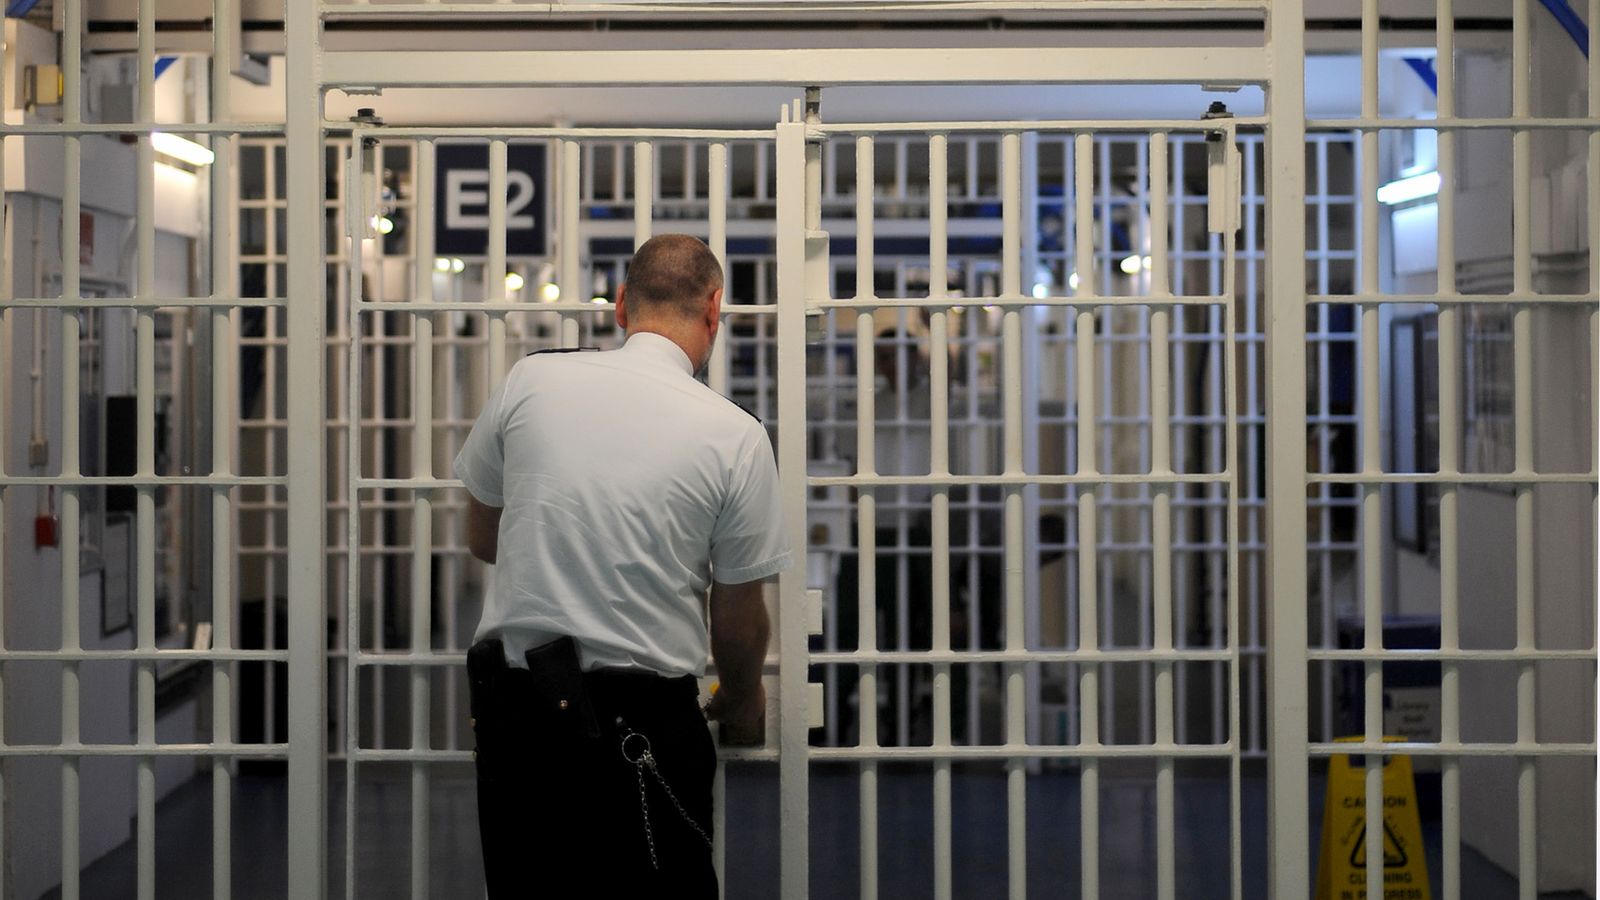 Затворническа схема за предсрочно освобождаване, караща „високорисковите“ престъпници да бъдат освобождавани, установява нов доклад